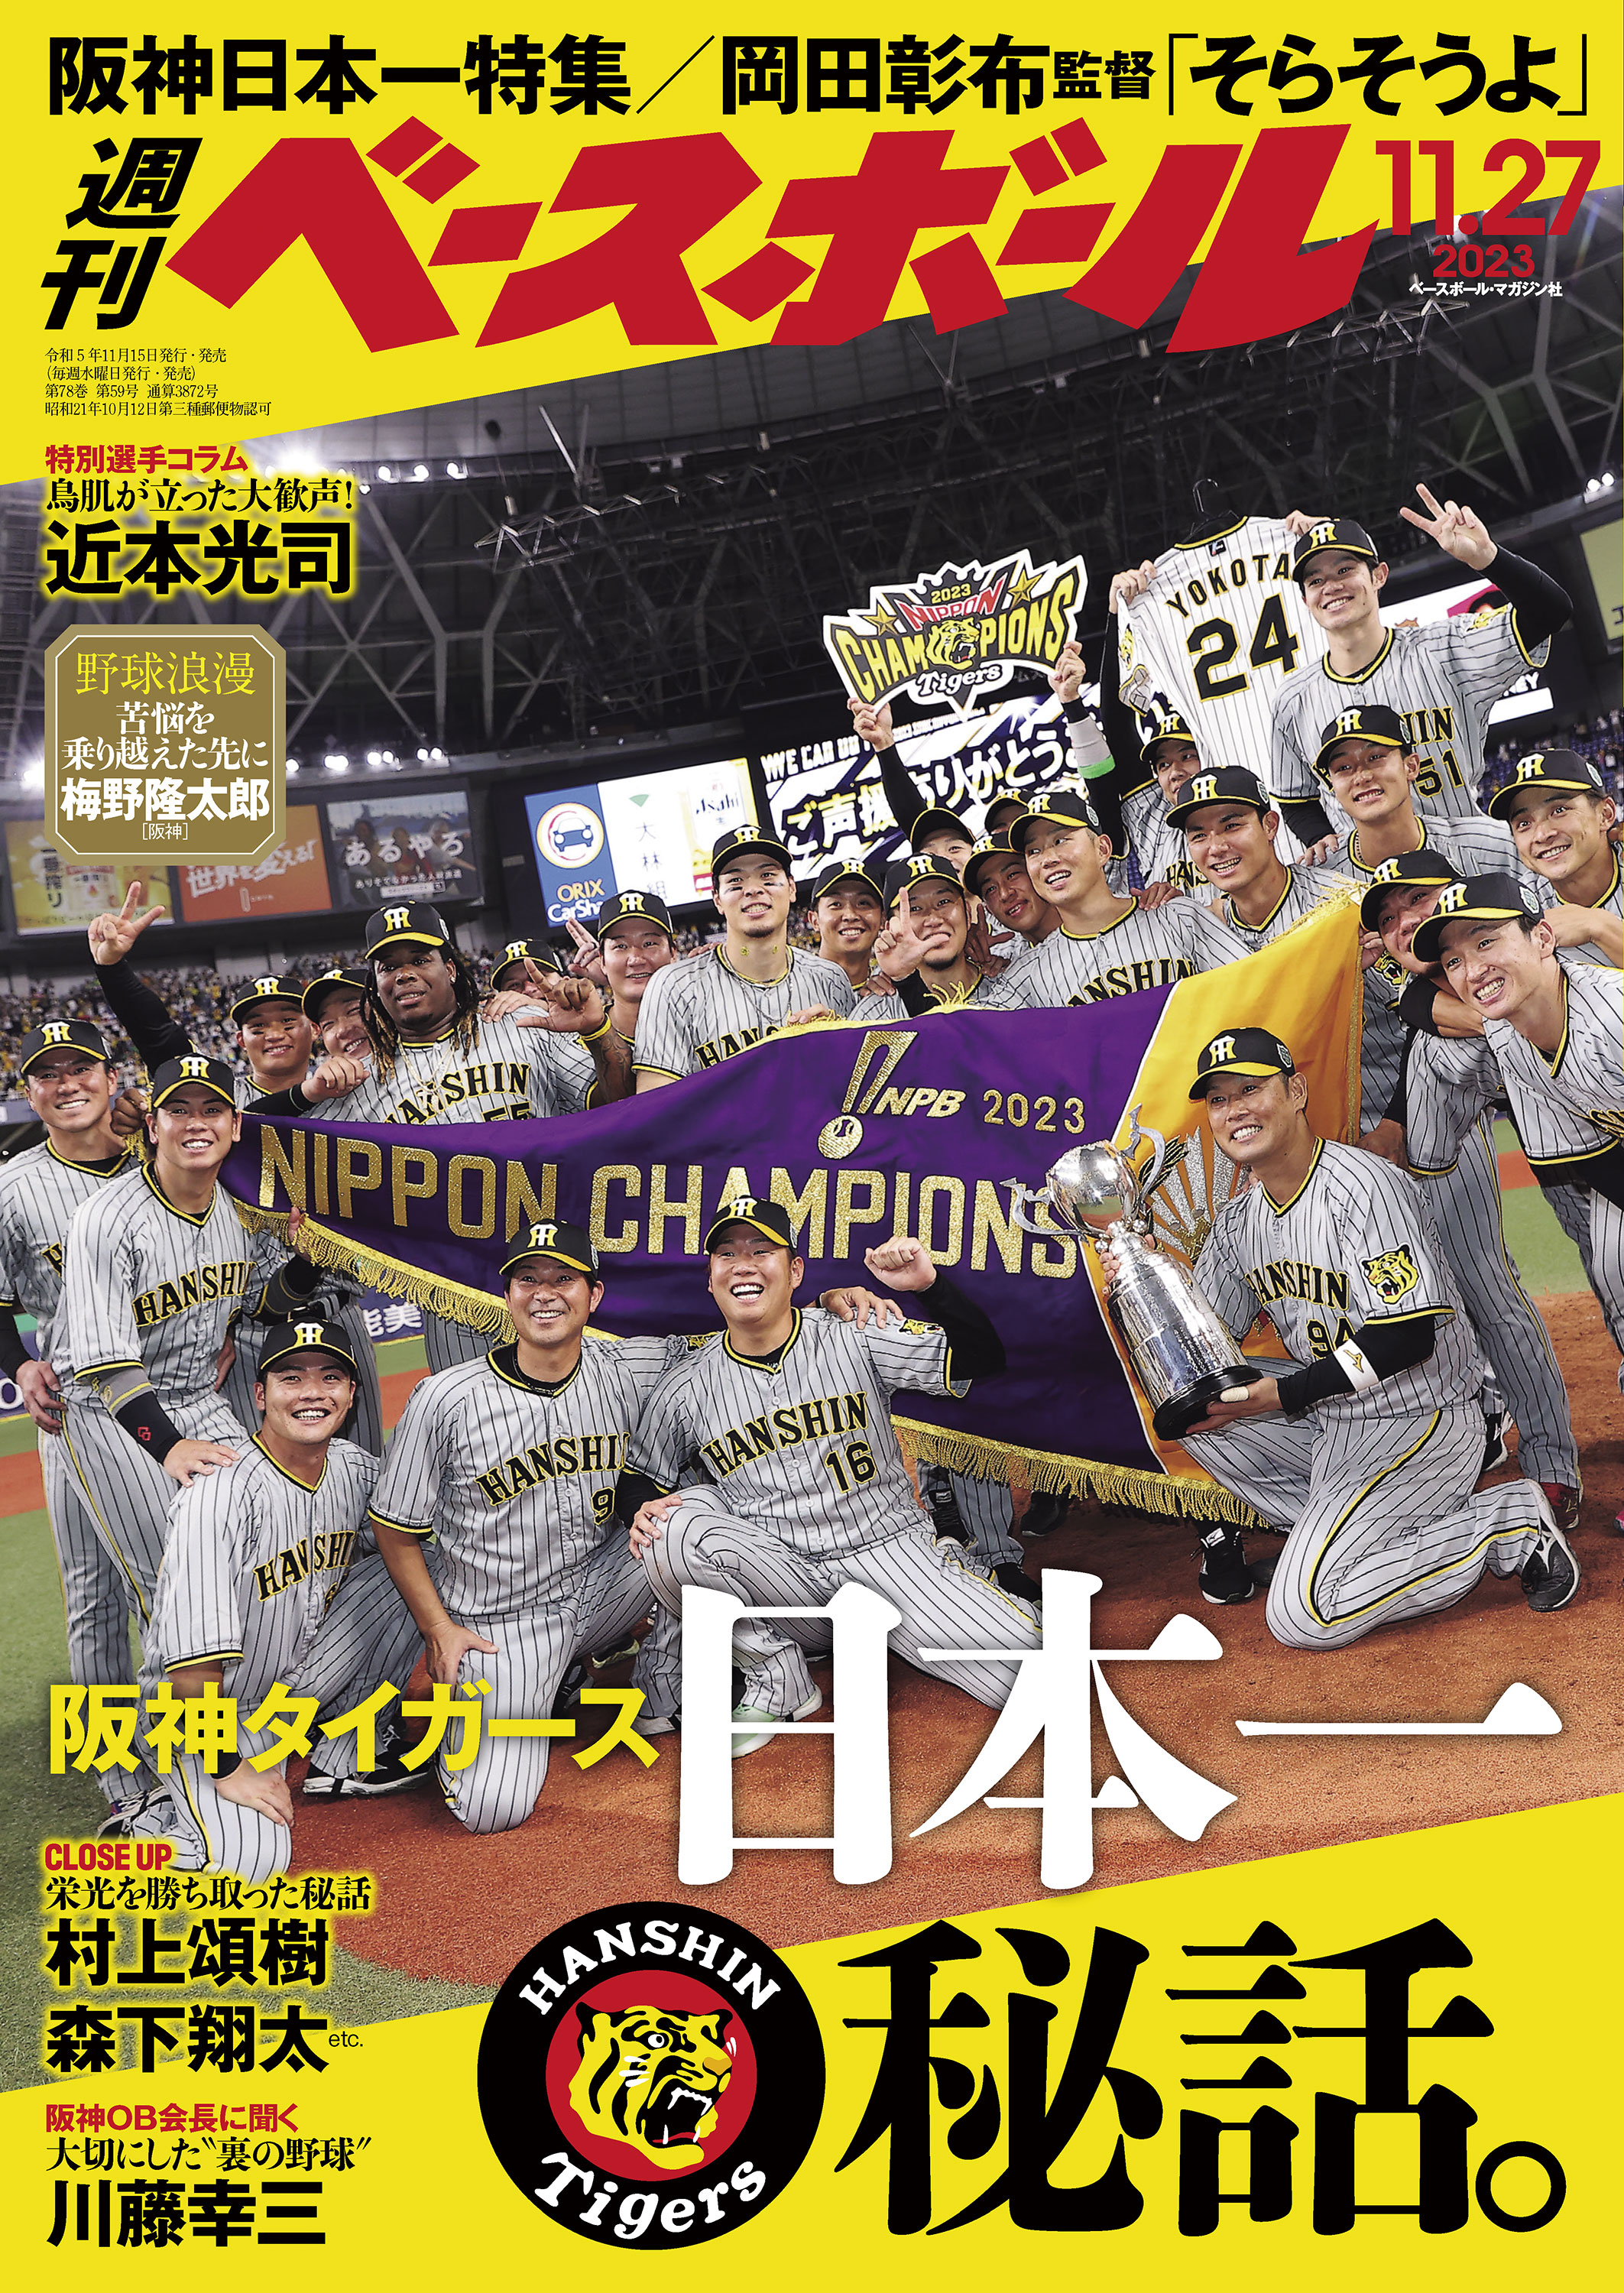 23阪神タイガース 全143試合 スコアブック - スポーツ選手